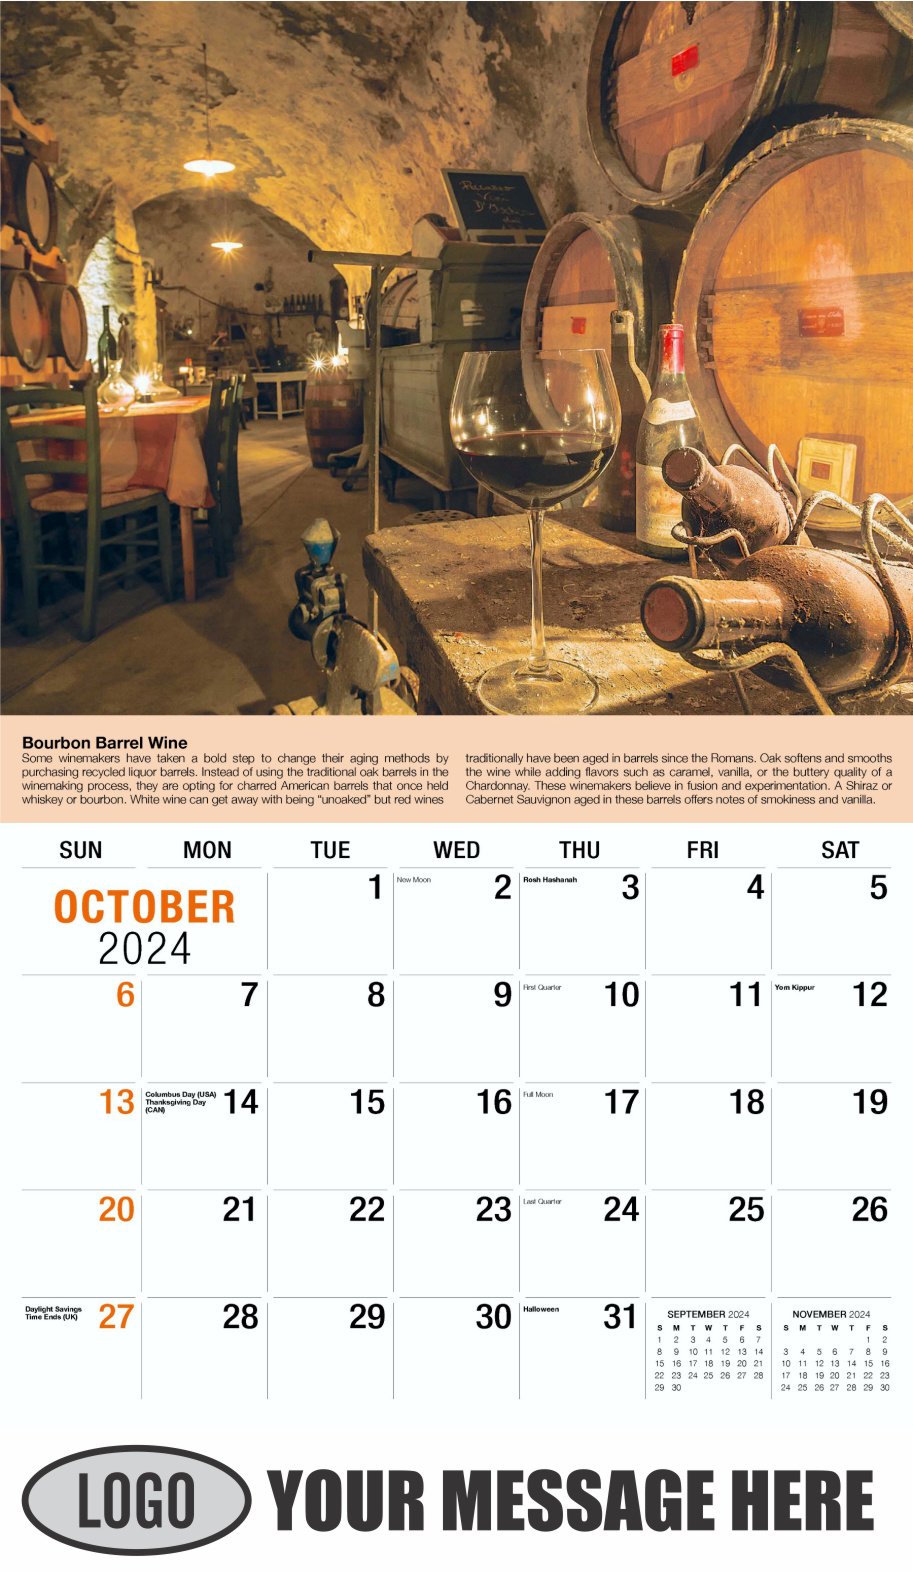 Vintages - Wine Tips 2024 Business Promo Calendar - October